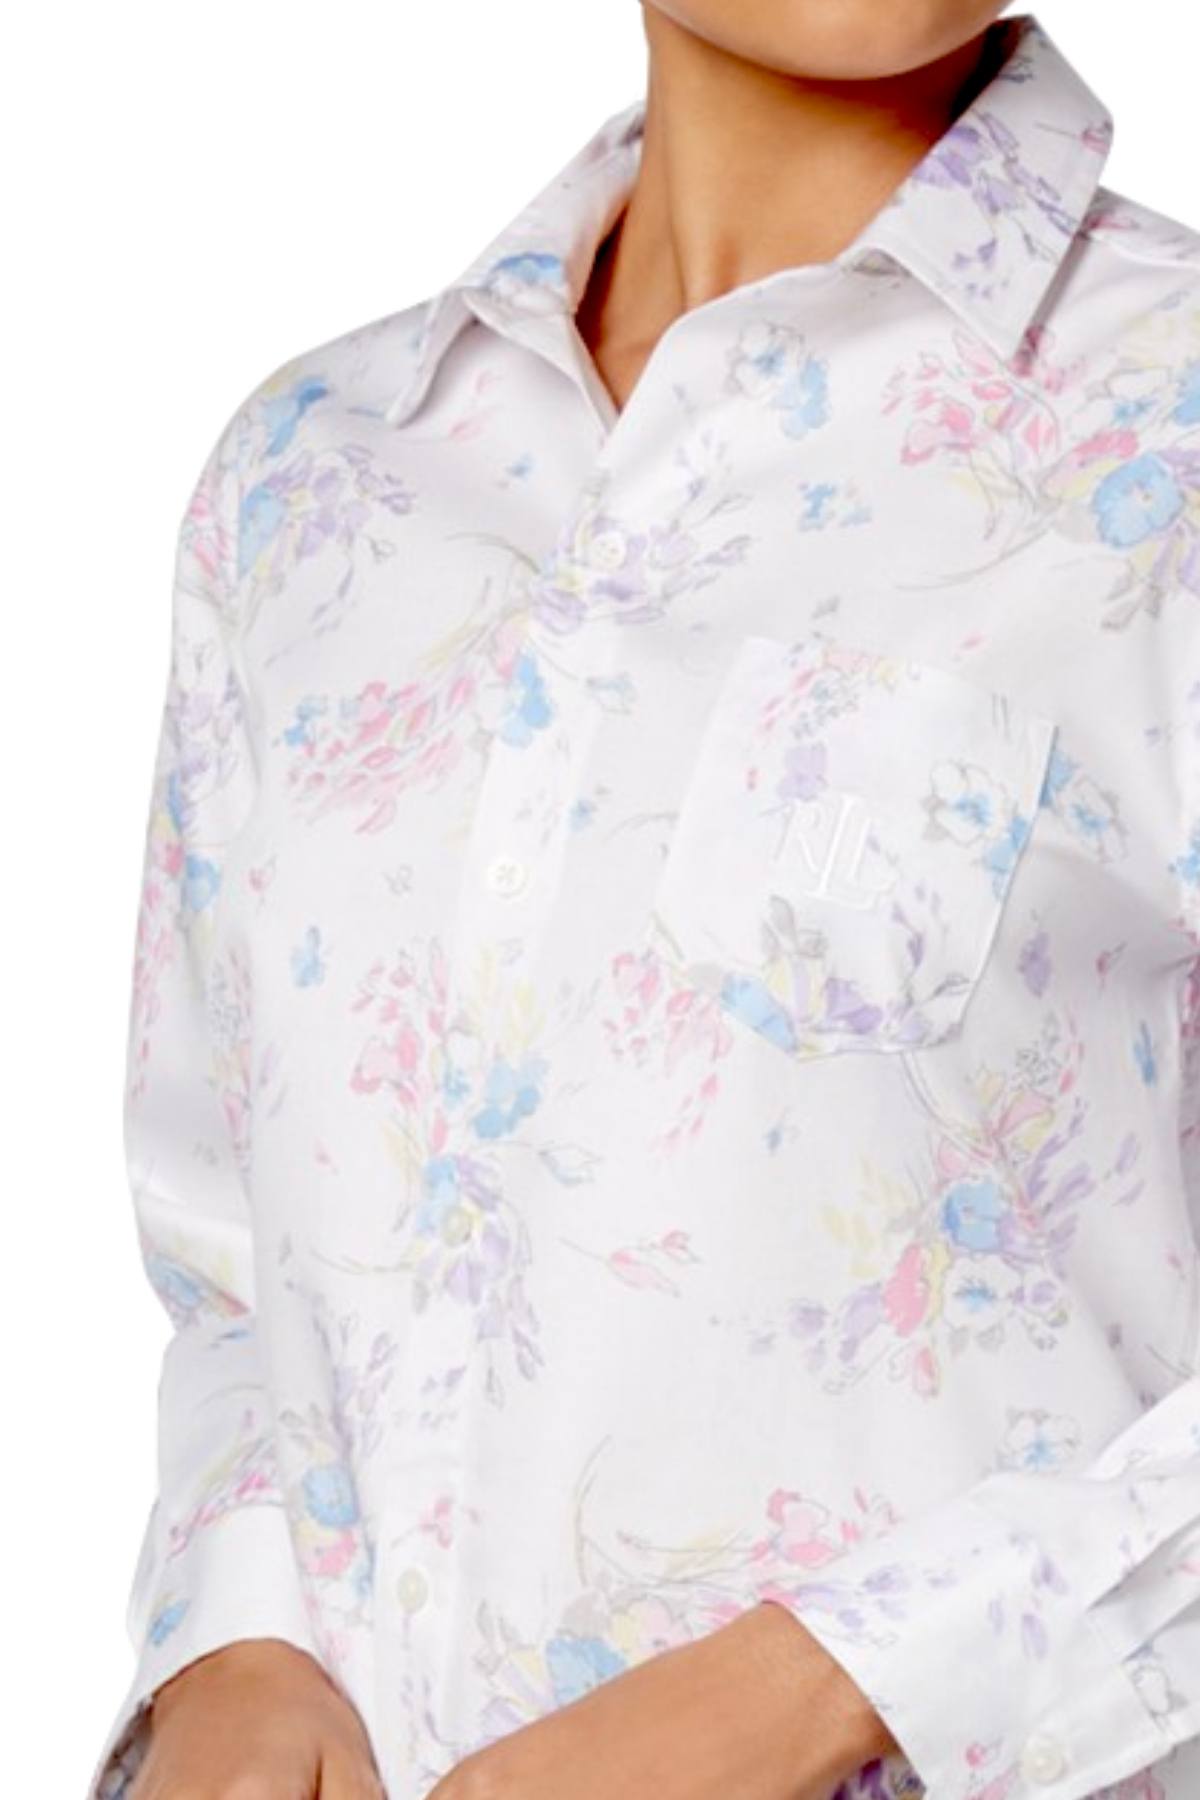 Lauren Ralph Lauren White/Multi-Floral Printed Cotton Sleepshirt